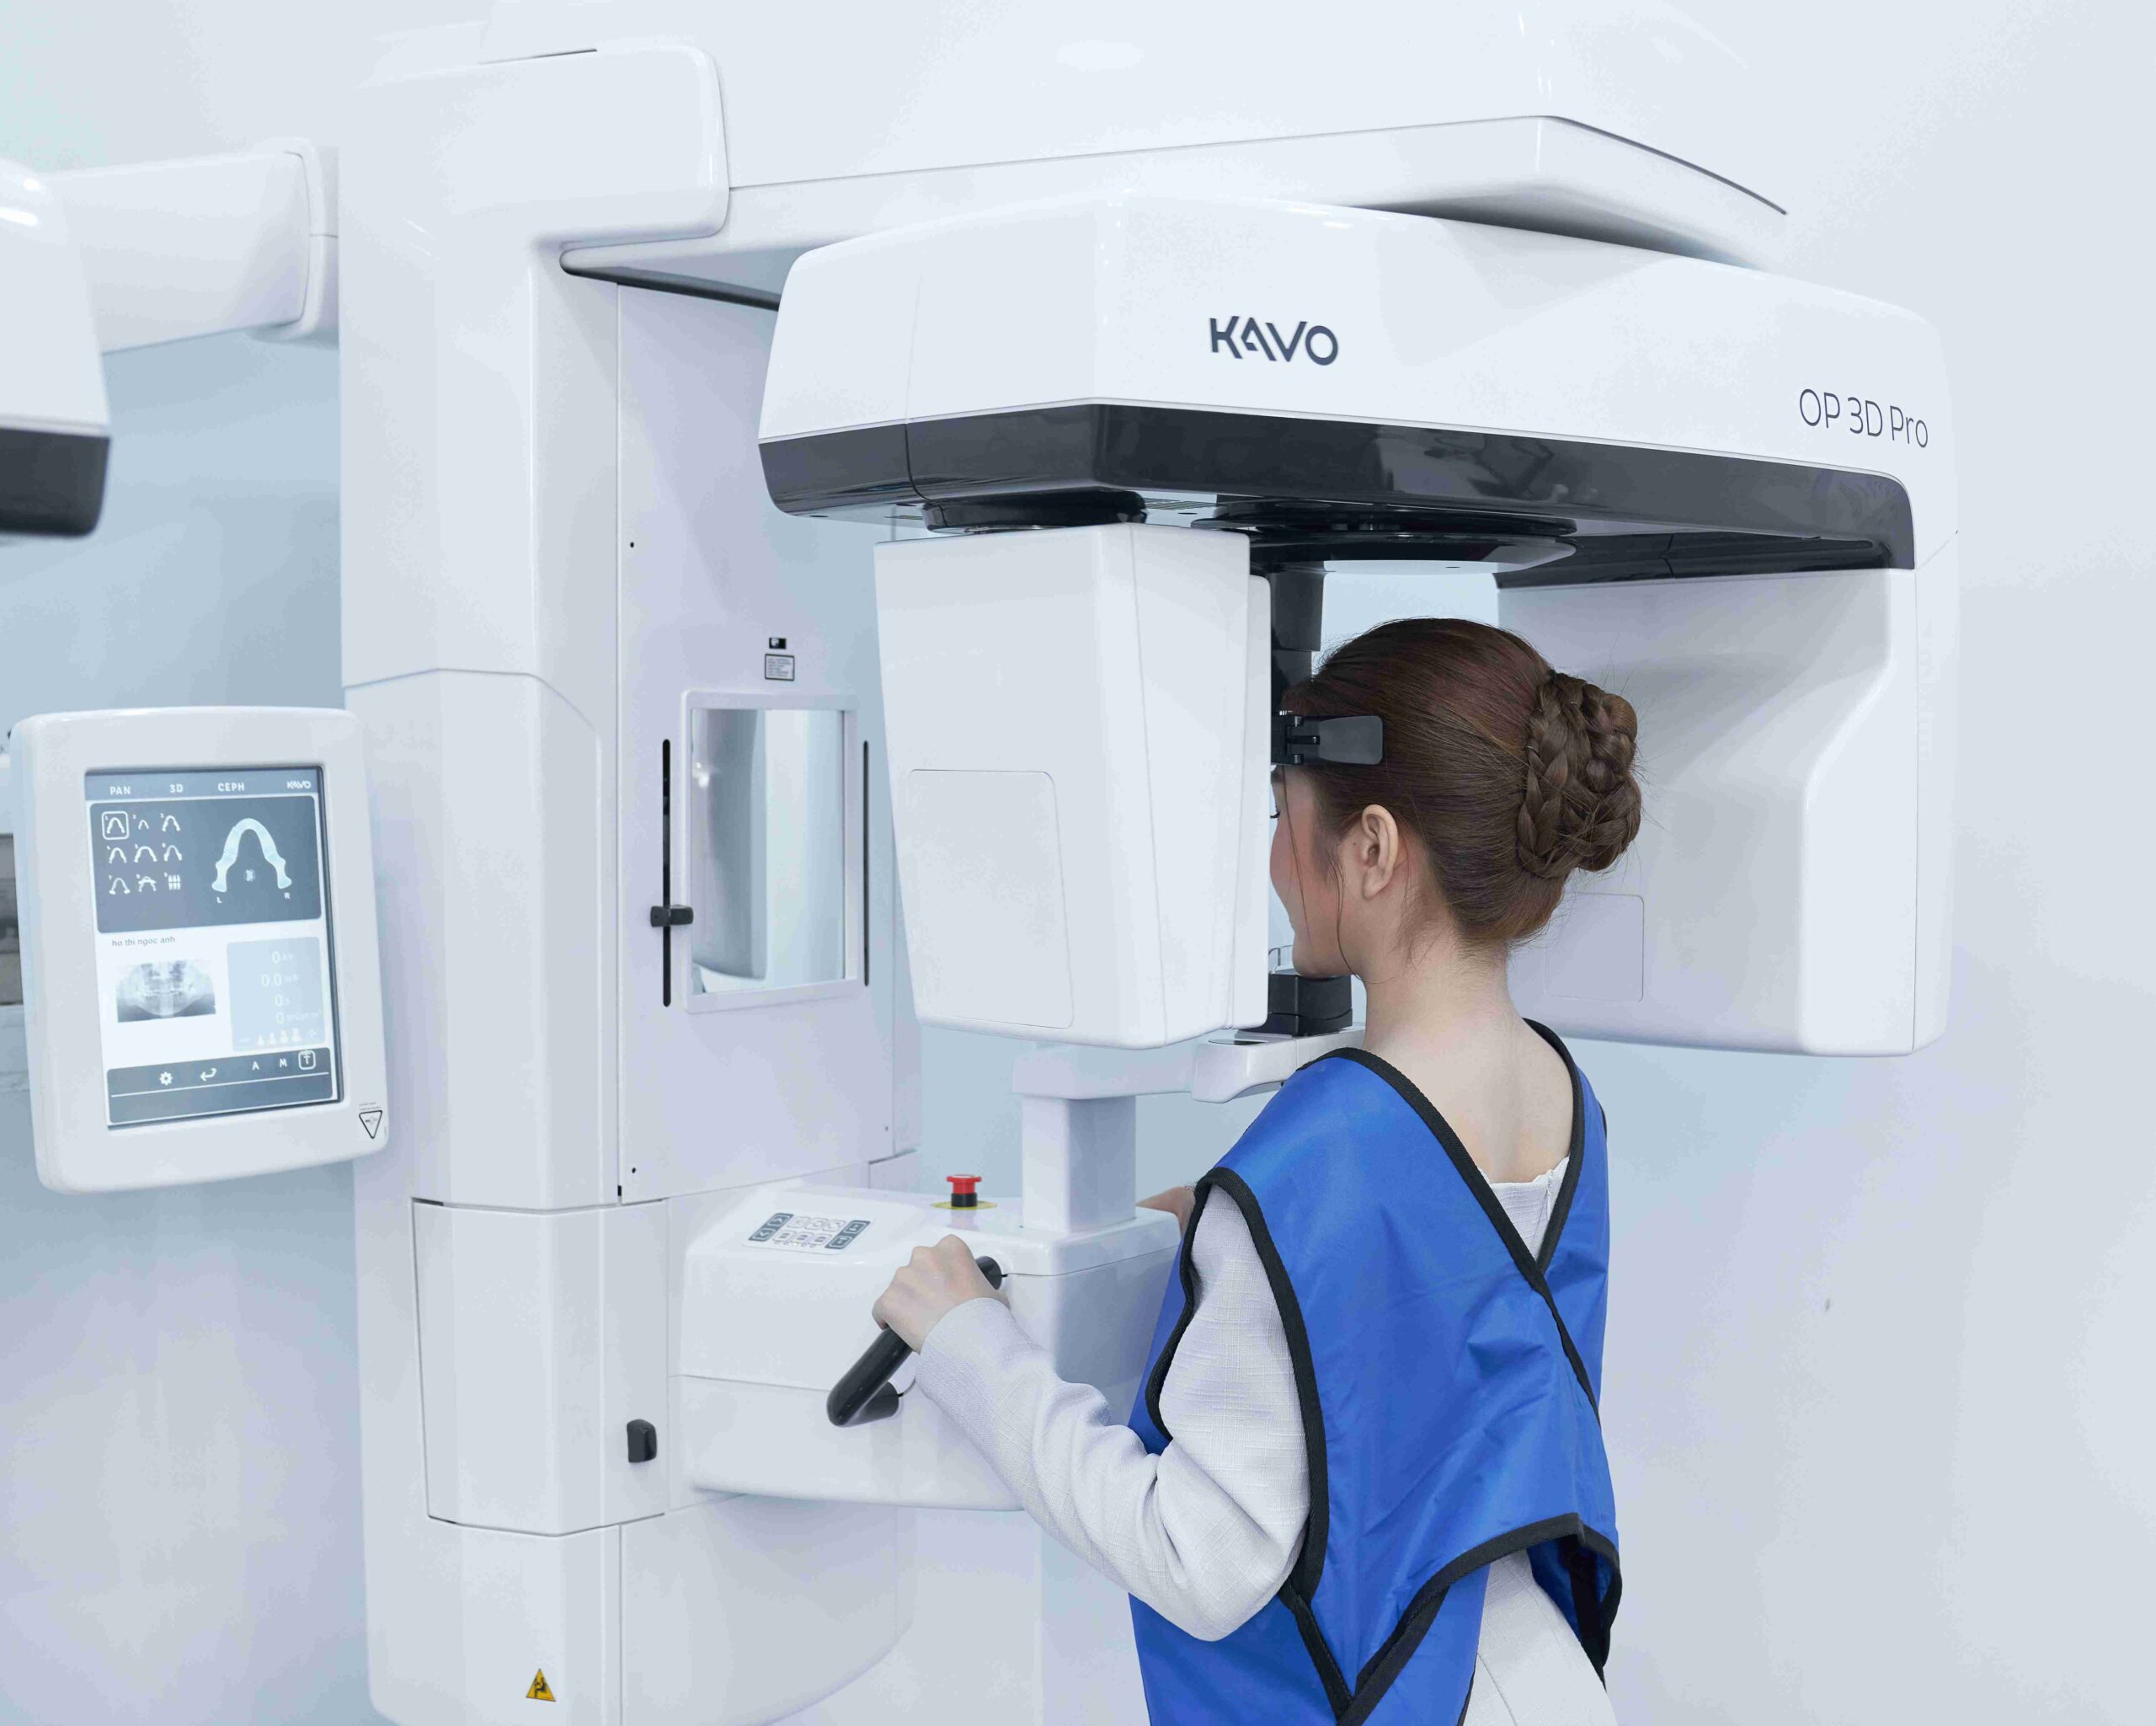 Công nghệ chẩn đoán hình ảnh CT Kavo OP 3D Pro được ứng dụng tại Nha khoa Quốc tế DAISY.